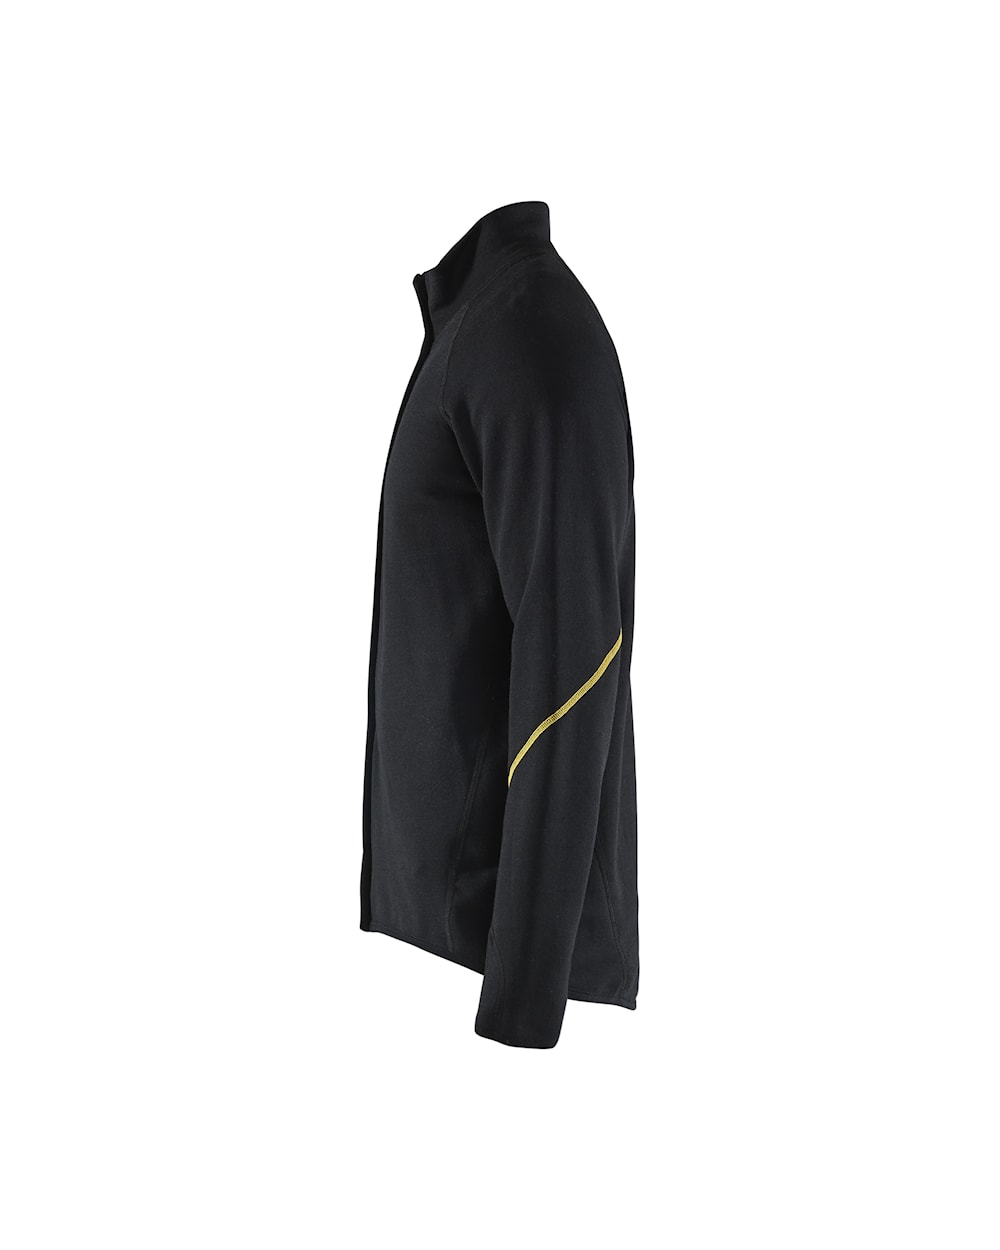 Blaklader Flame Resistant Wool Jacket 4793